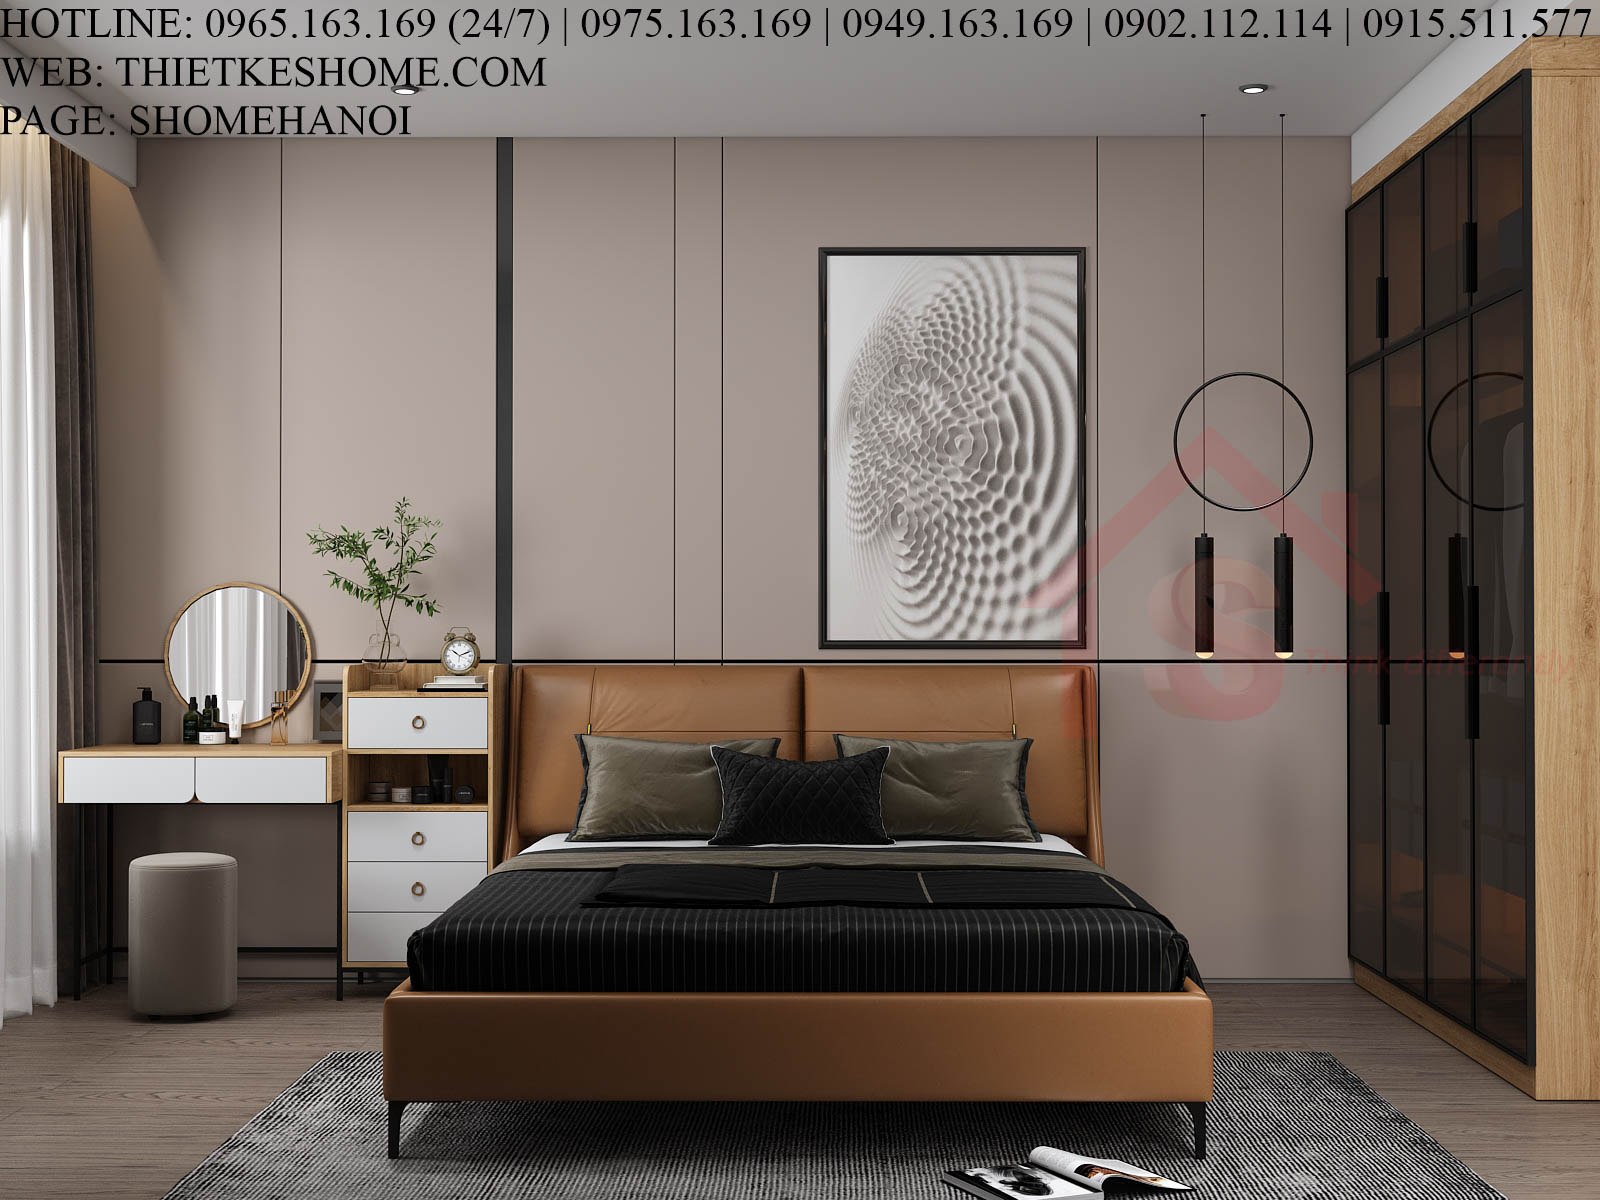 S HOME Combo mẫu nội thất phòng ngủ đẹp hiện đại tiện dụng SHOME6805